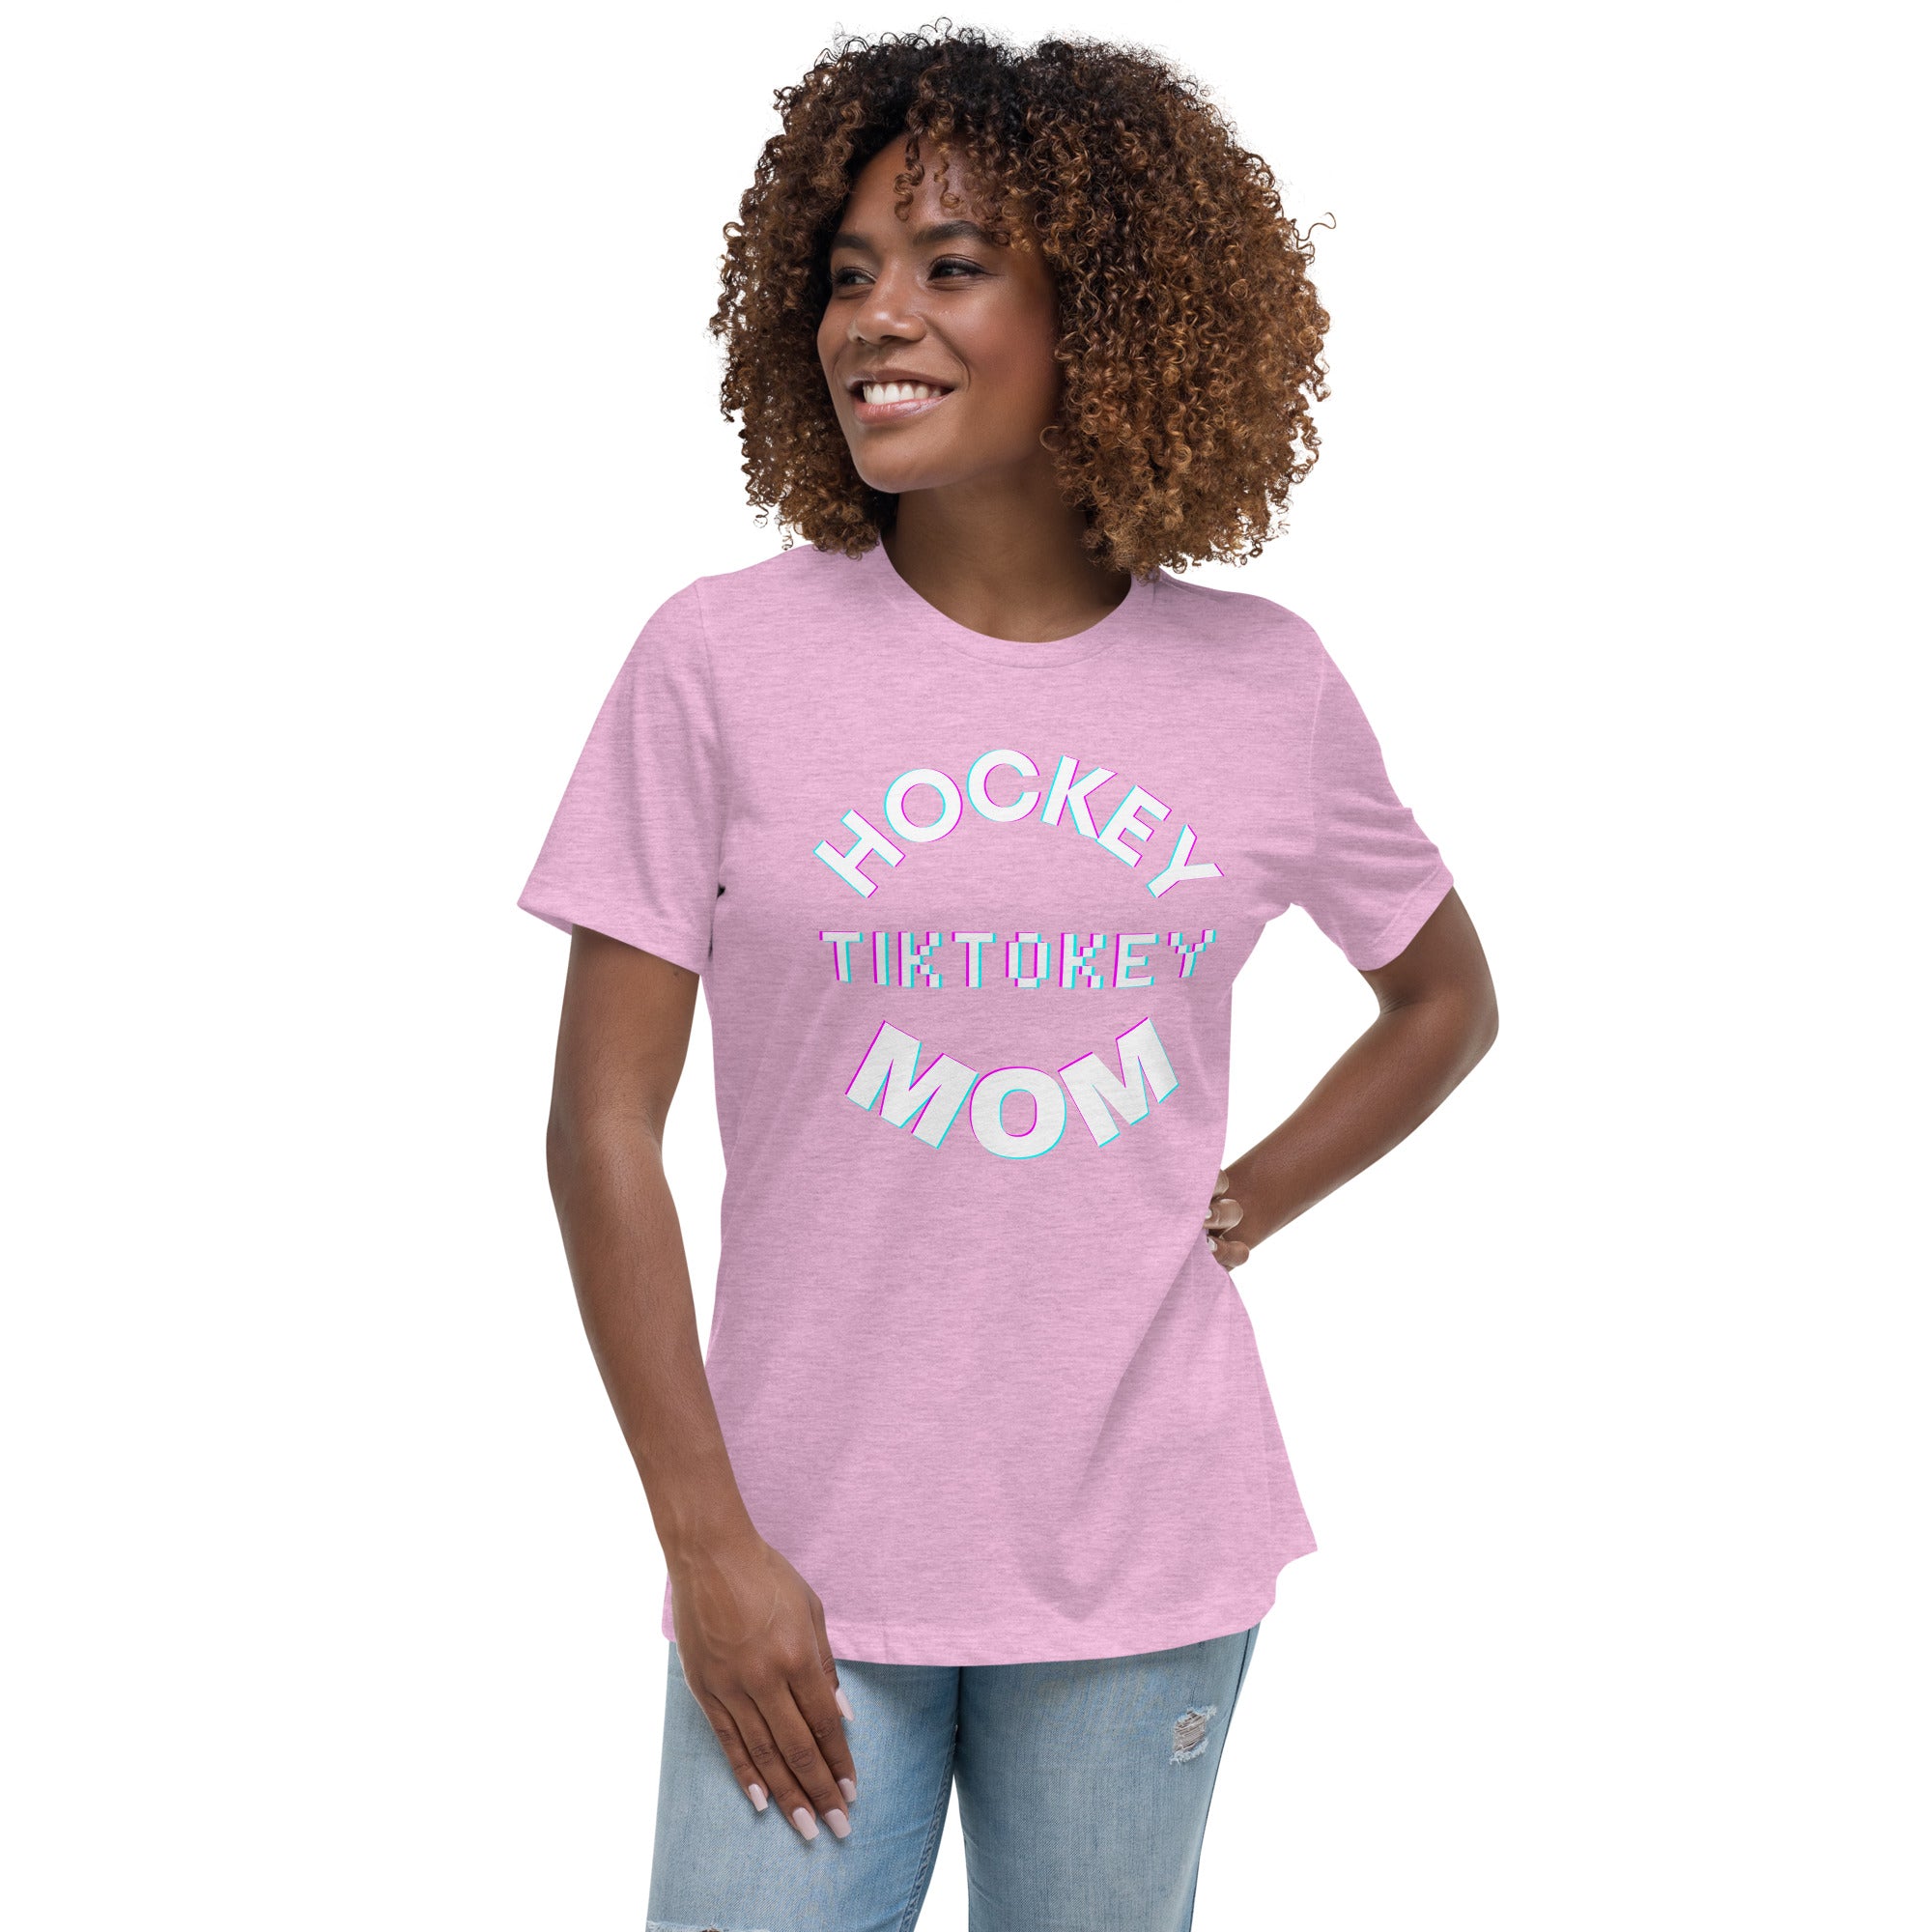 Hockey Tiktokey Women's Premium T-Shirt